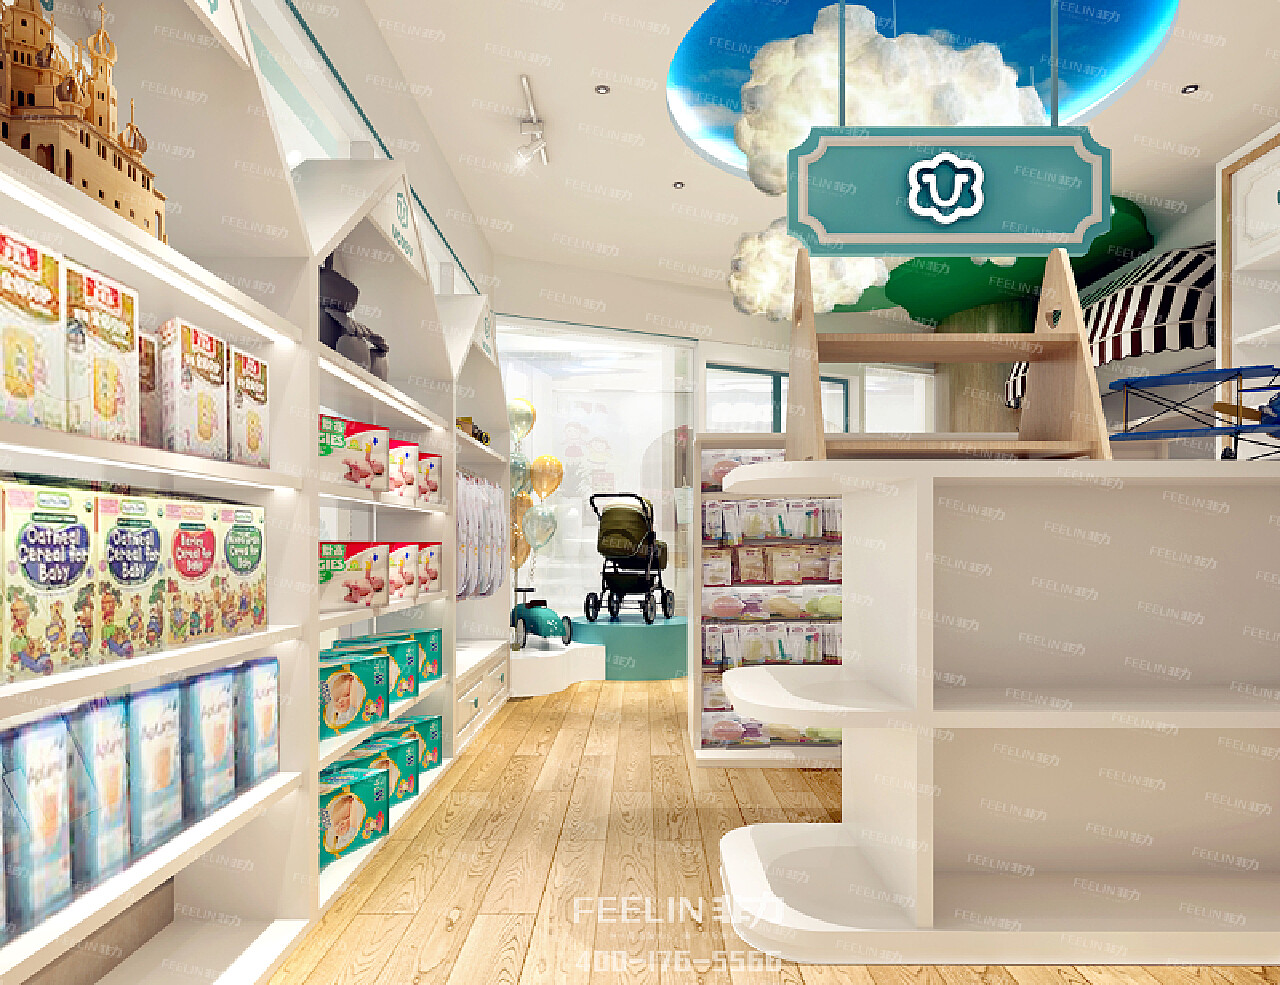 上海母婴店室内陈列装修设计图欣赏_装信通网效果图